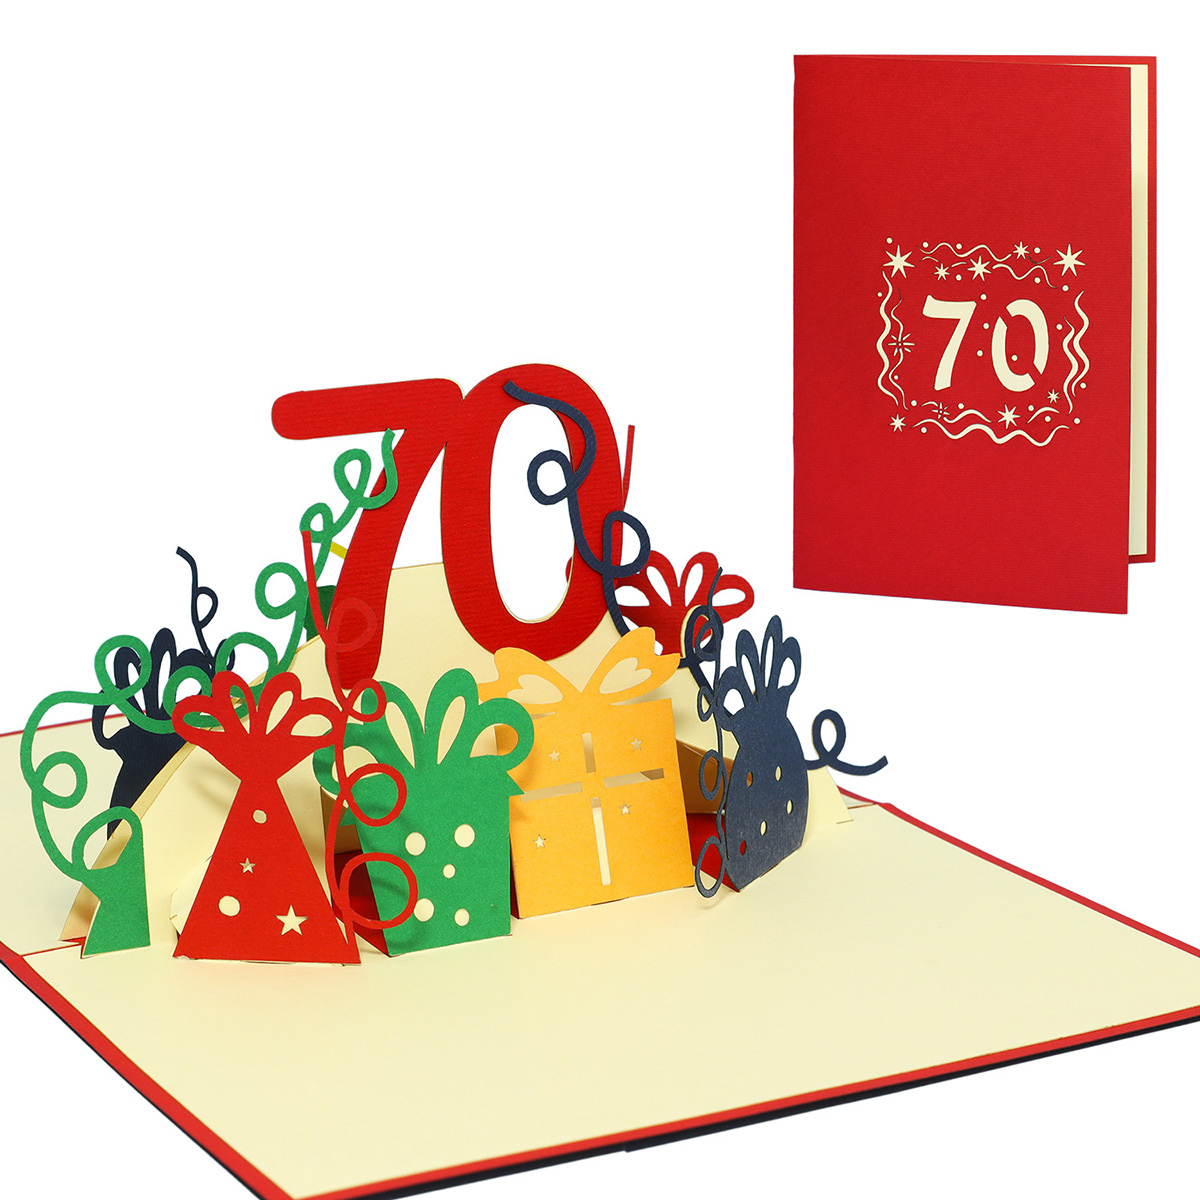 LINPOPUP Pop Up 3D Card, Birthday Card, Congratulations Card Voucher, 70th Birthday, LIN17270, LINPopUp®, N24